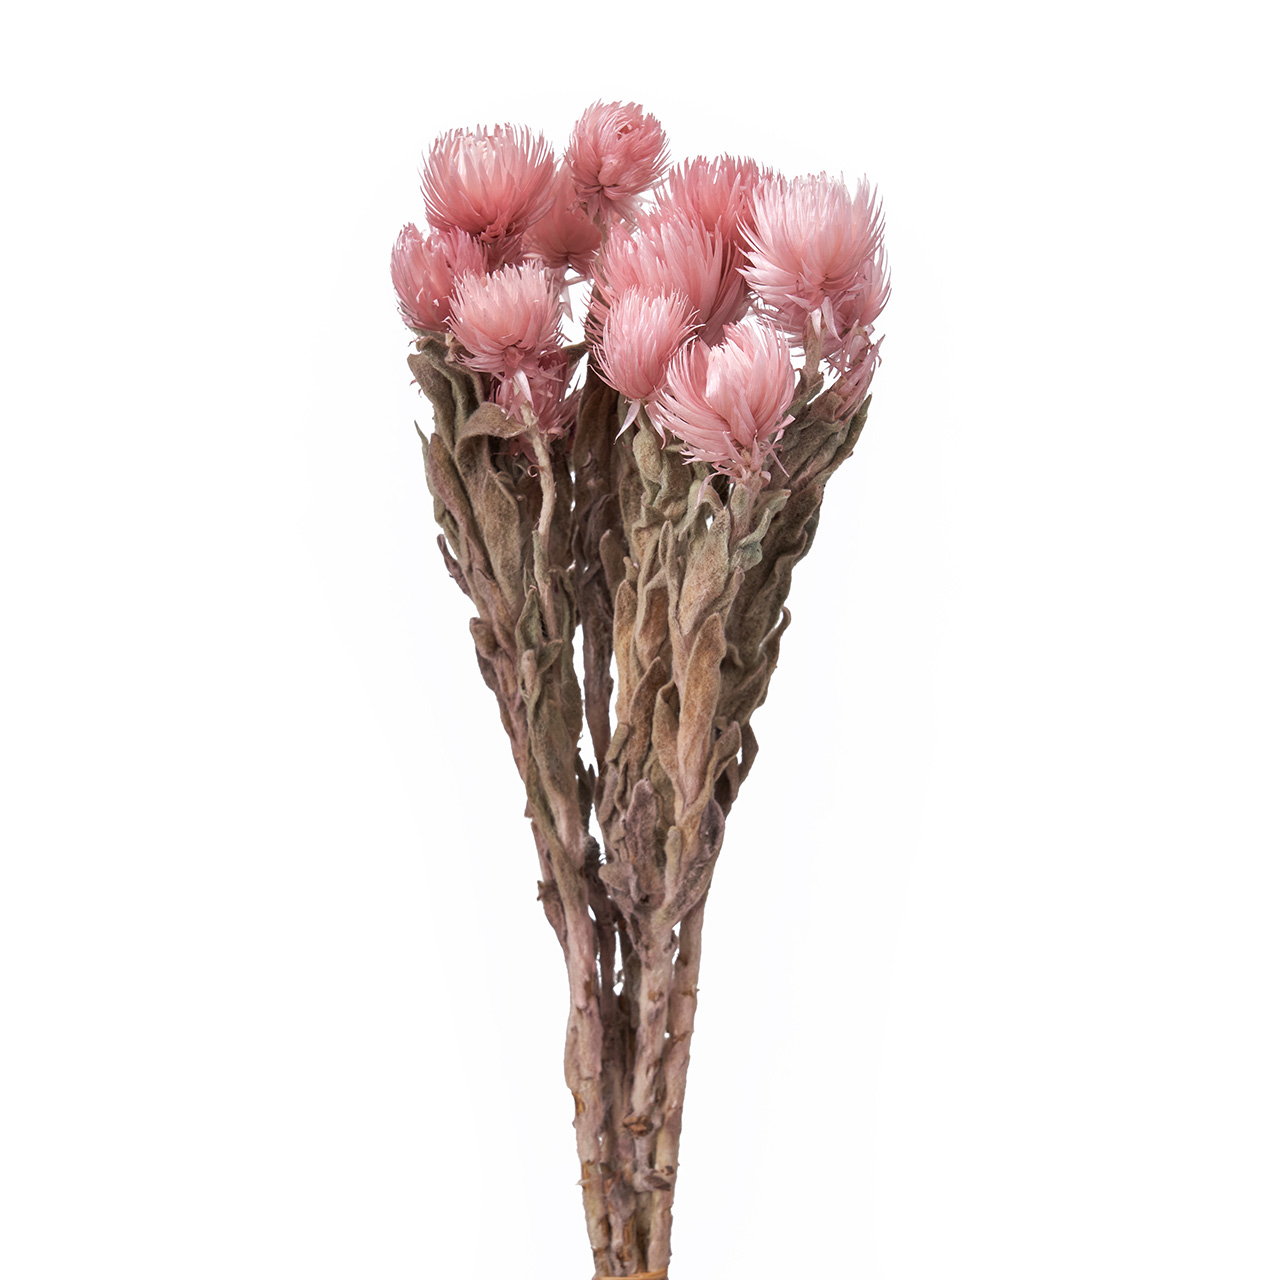 マイフラ 通販 完売品 シルバーデージーミニ モーブピンク ドライフラワー Dt0761 カラー 長さ 約30cm モーブピンク ドライフラワー ナチュラル素材 全国にmagiq 花器 花資材などをお届けします